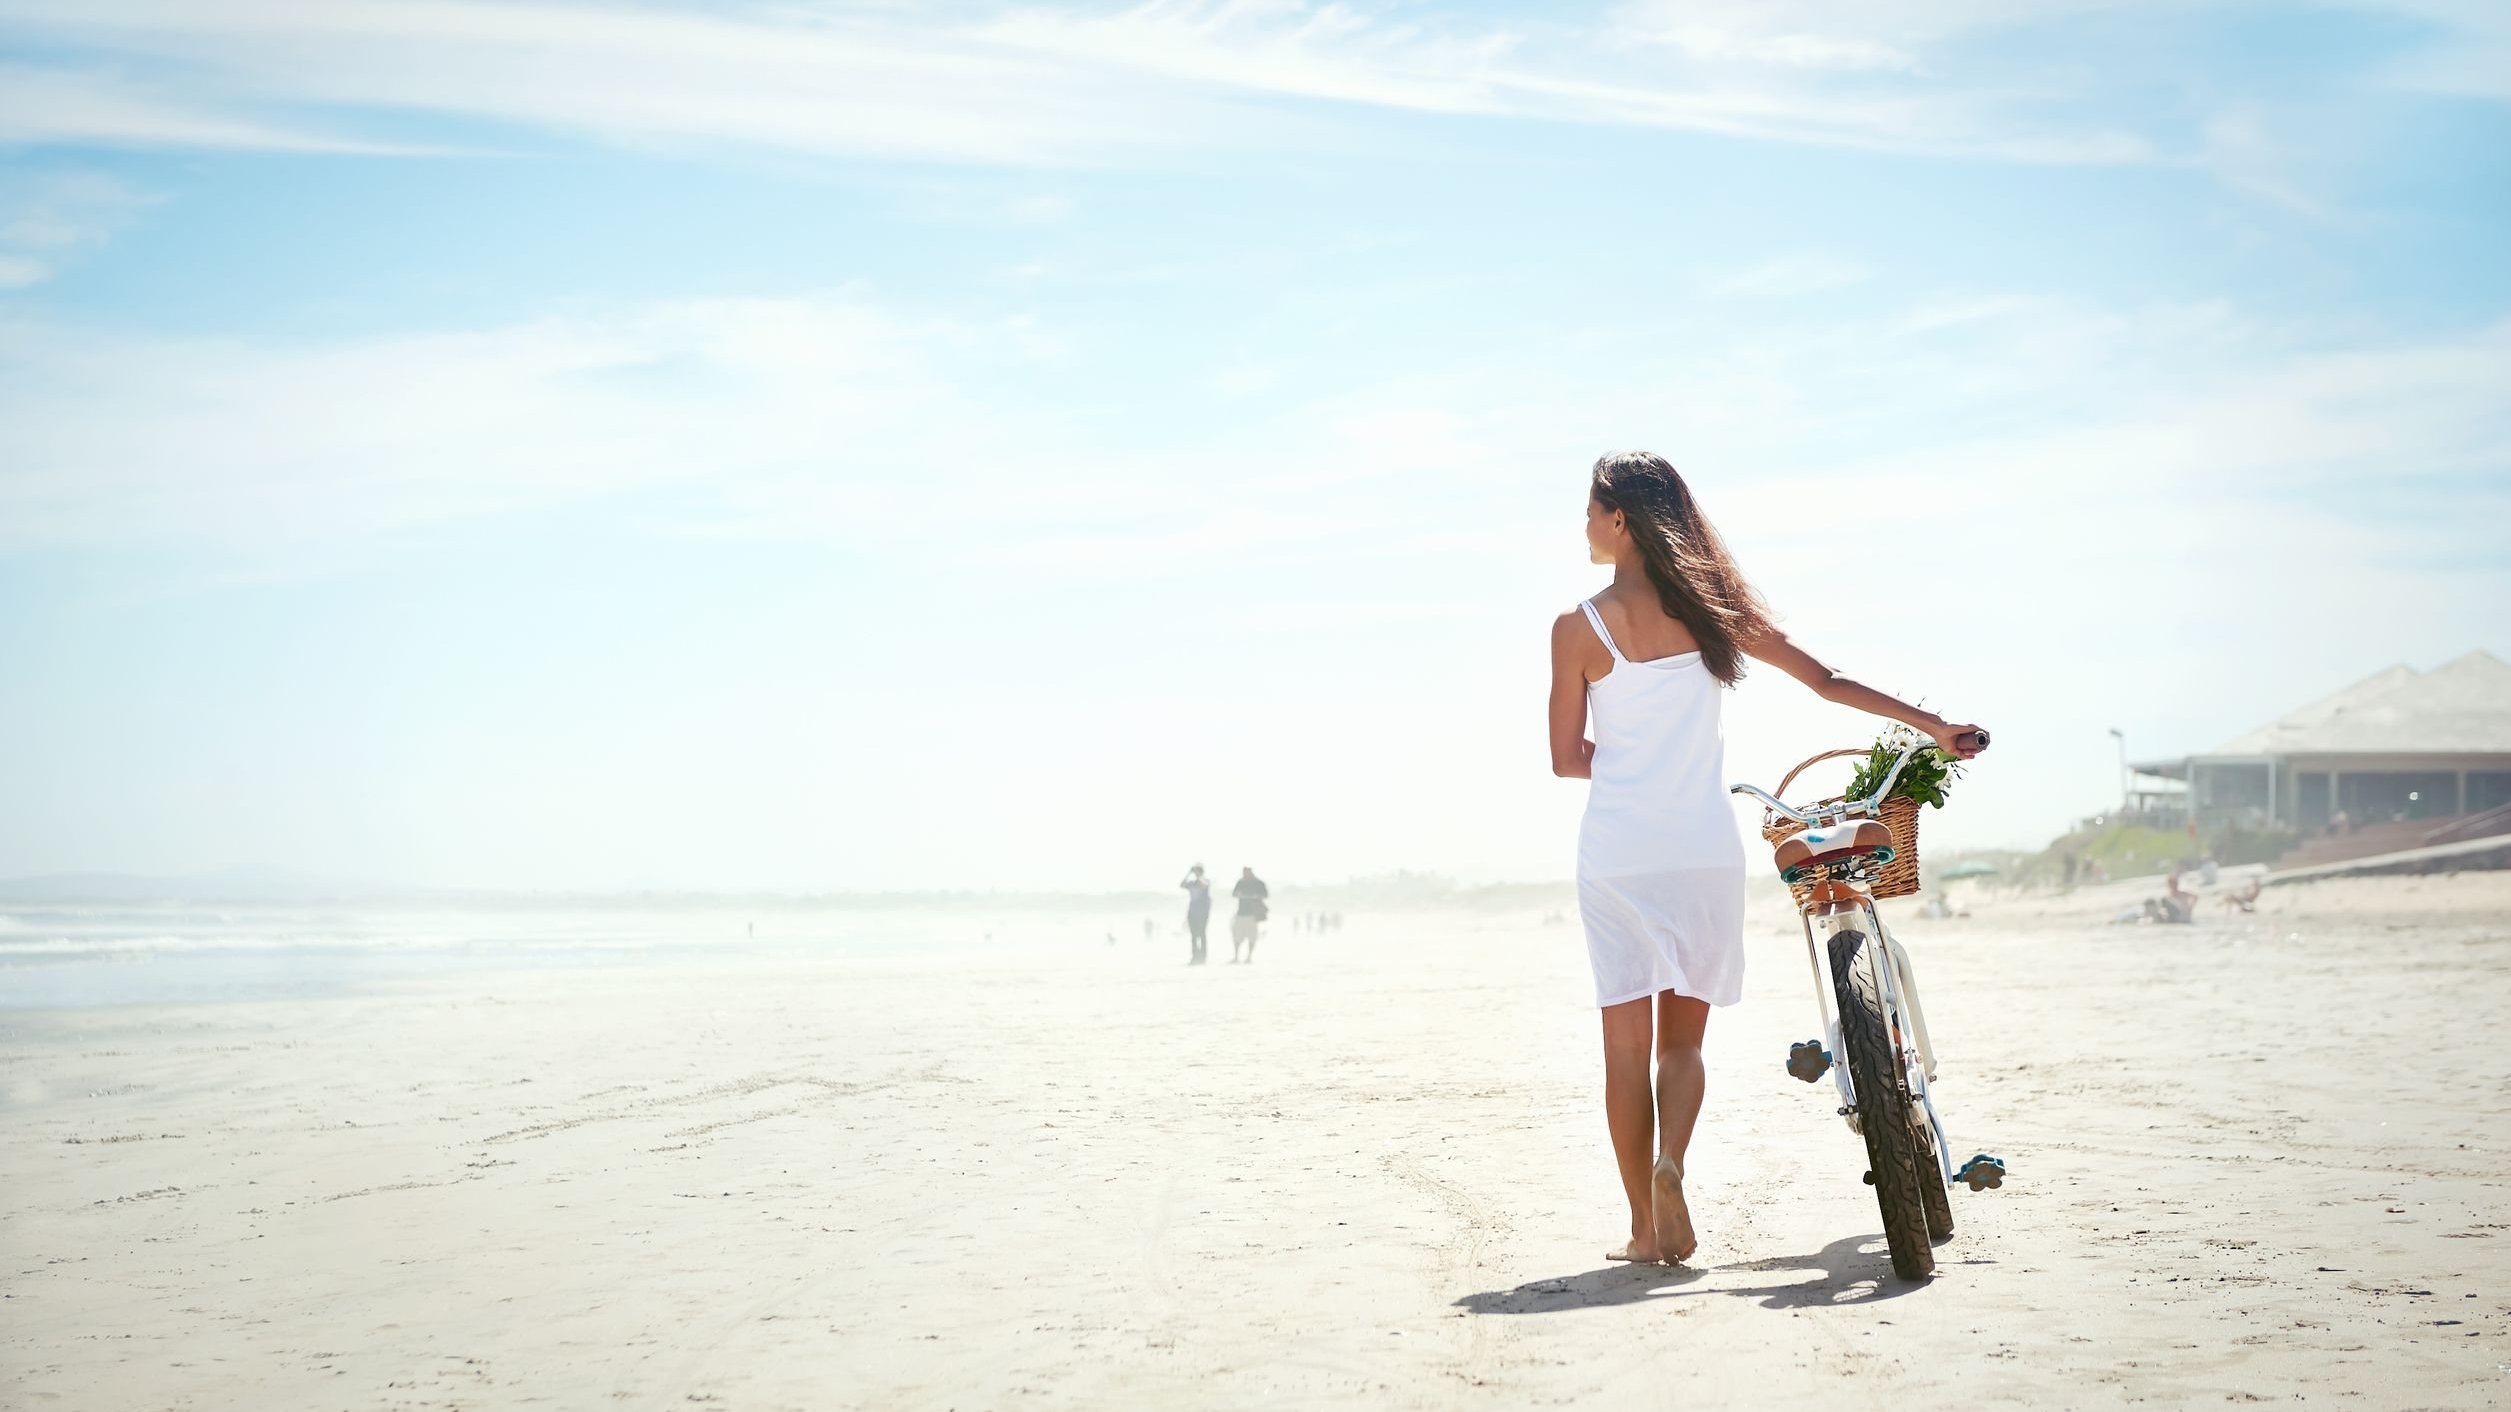 Mulher caminhando descalça na praia, guiando sua bicicleta com as mãos. Ela olha para o amor, e o céu está azul.